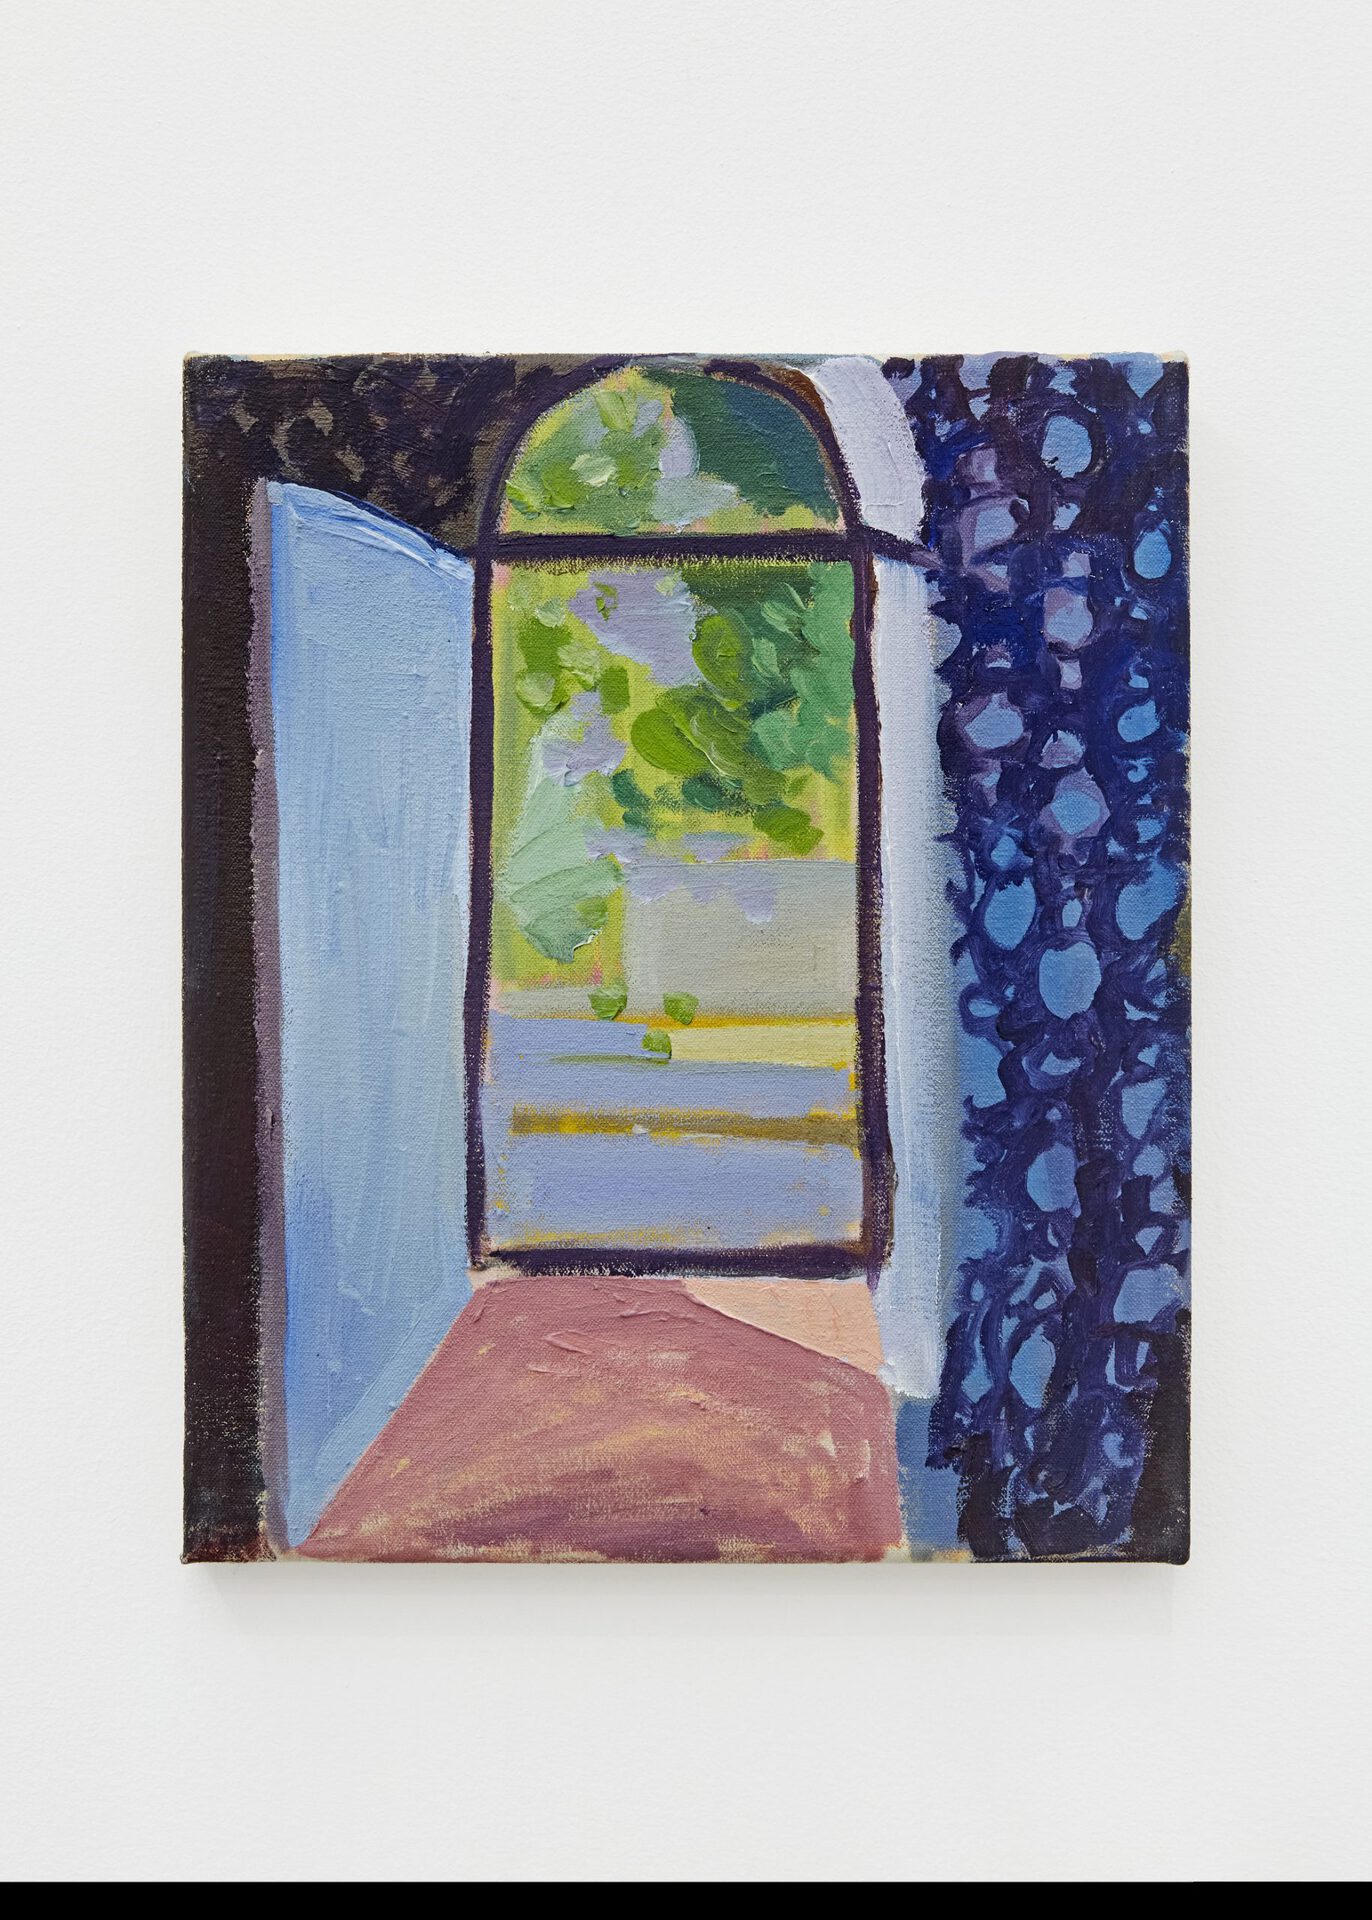 Joshua Armitage, Doorway No. 06, 2021.Oil on canvas, 30.48 x 25.4 cm